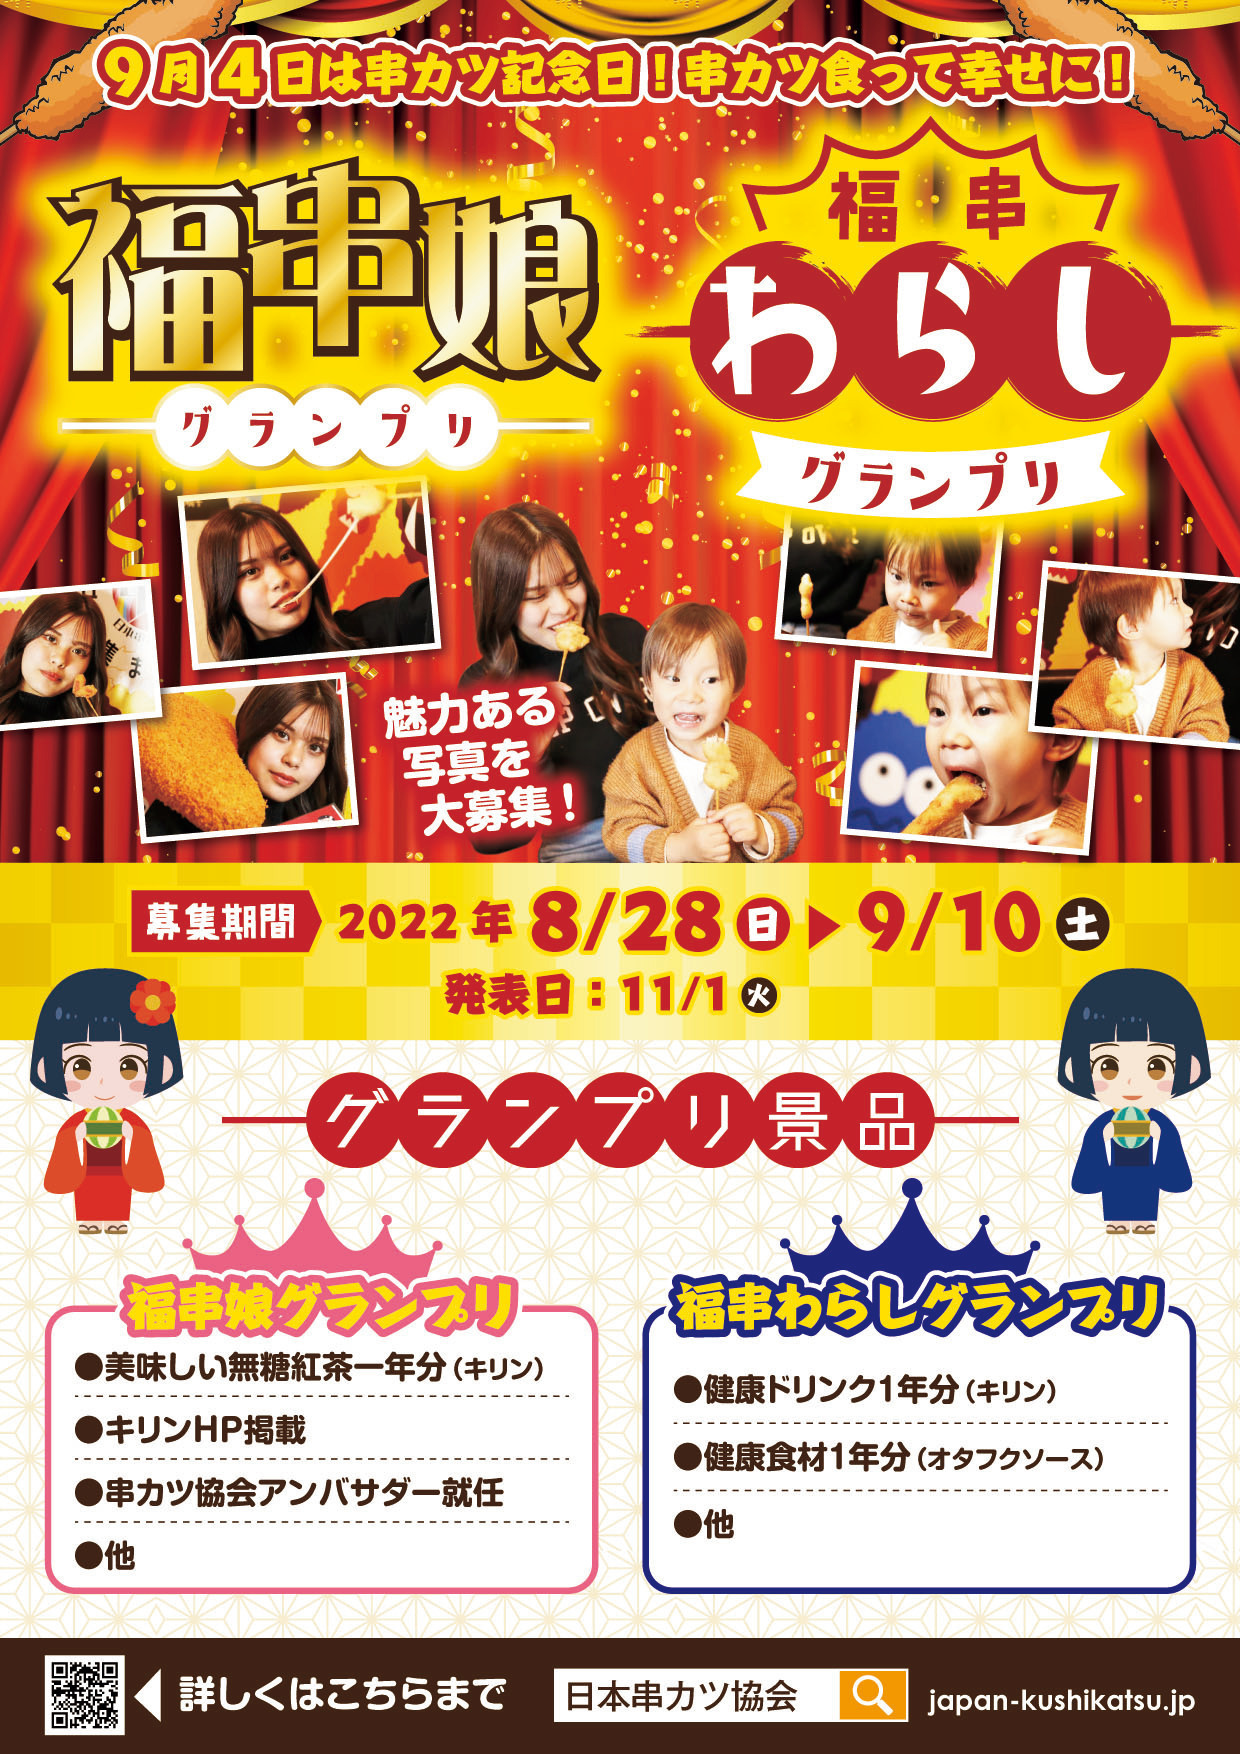 日本串カツ協会が制定した「串カツ記念日(9/4)」にあわせて
串カツへの熱量をぶつけるフォトグランプリイベントを開催！